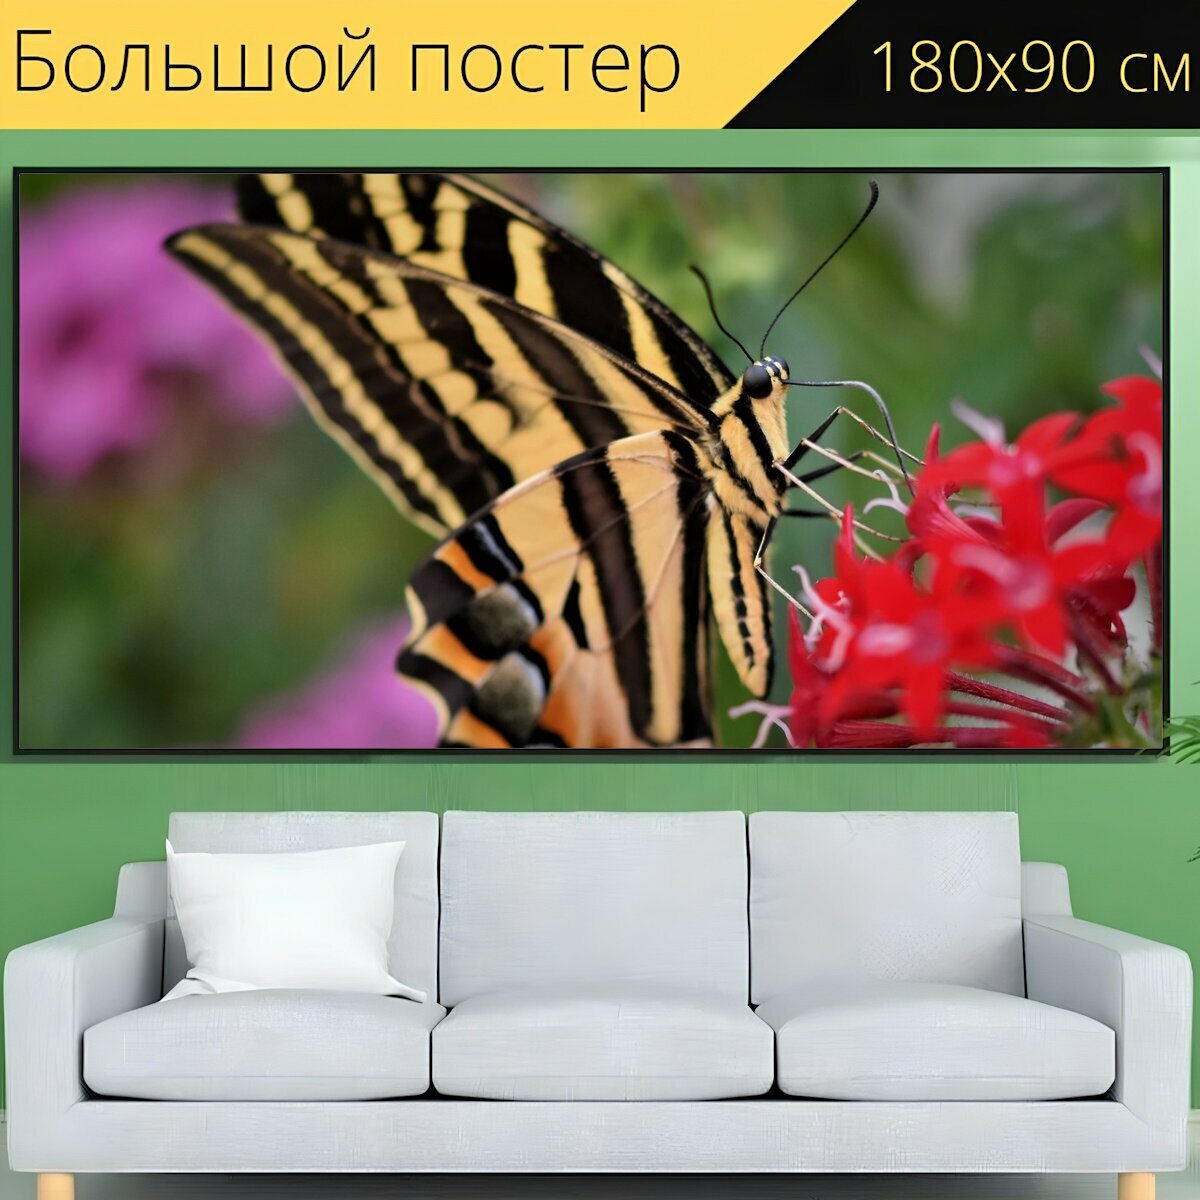 Большой постер "Ласточкин хвост, бабочка, тропические бабочки" 180 x 90 см. для интерьера